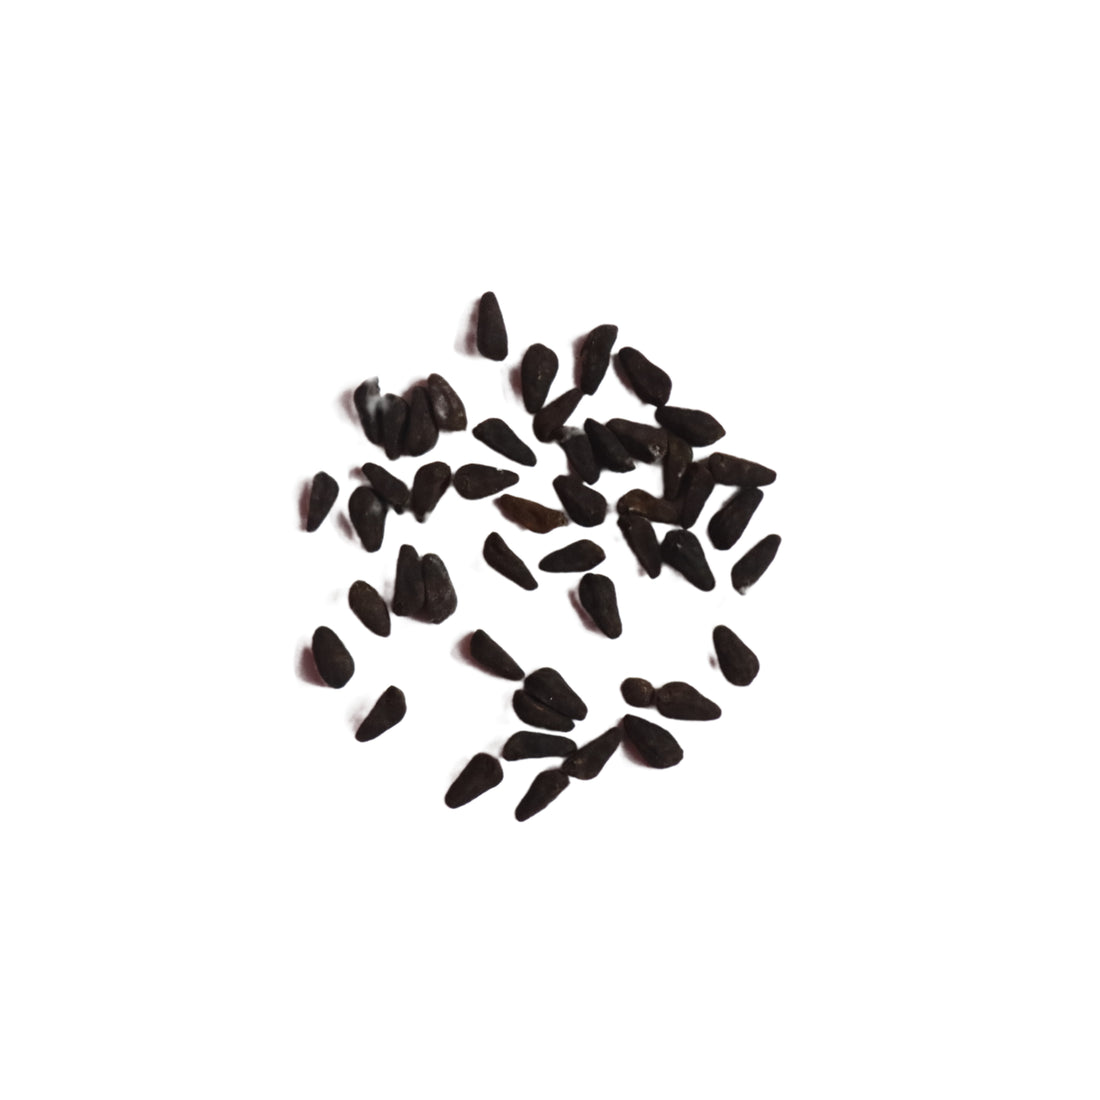 Cypress Vine / Kasiratnam Seeds - Open Pollinated